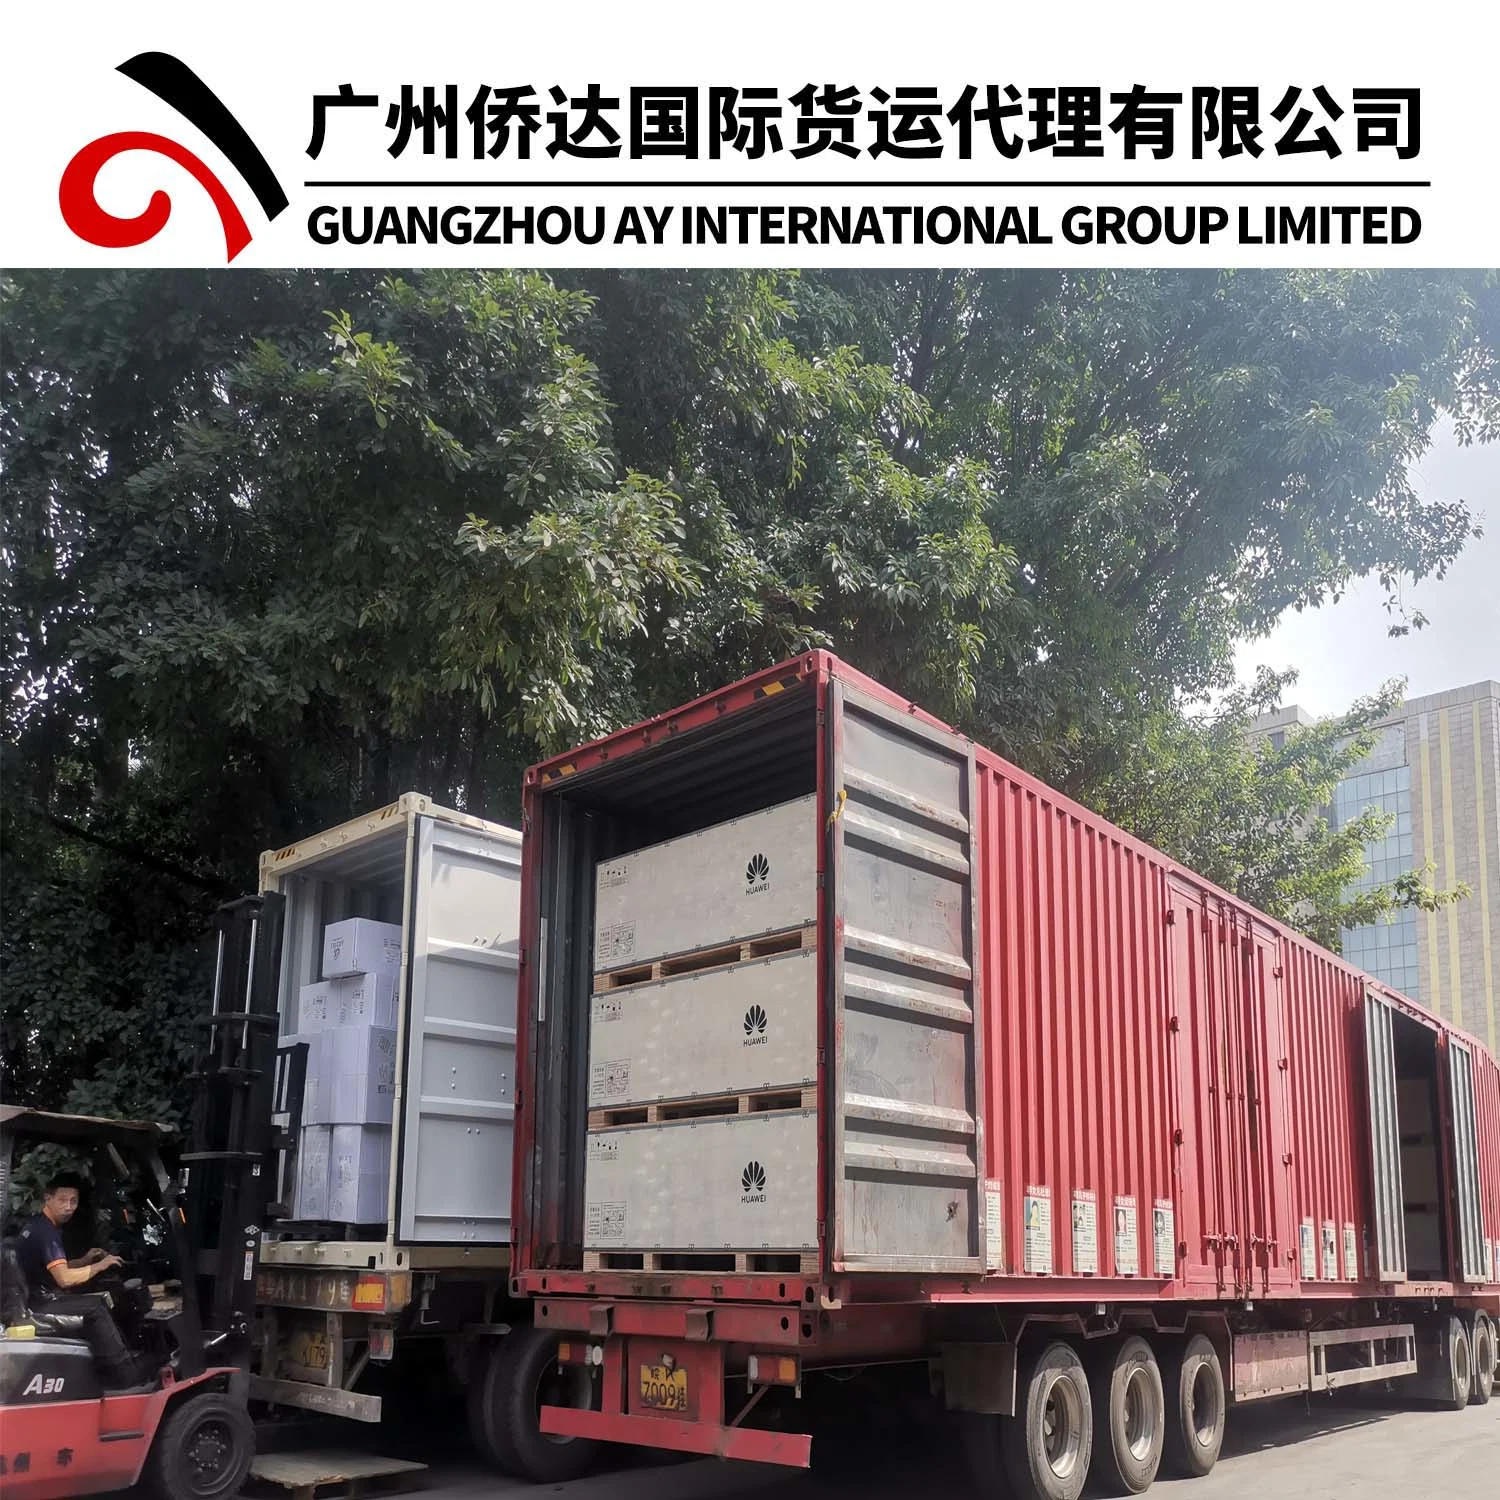 Serviço de Armazém Zhongshan com Agente de exportação profissional Guangzhou